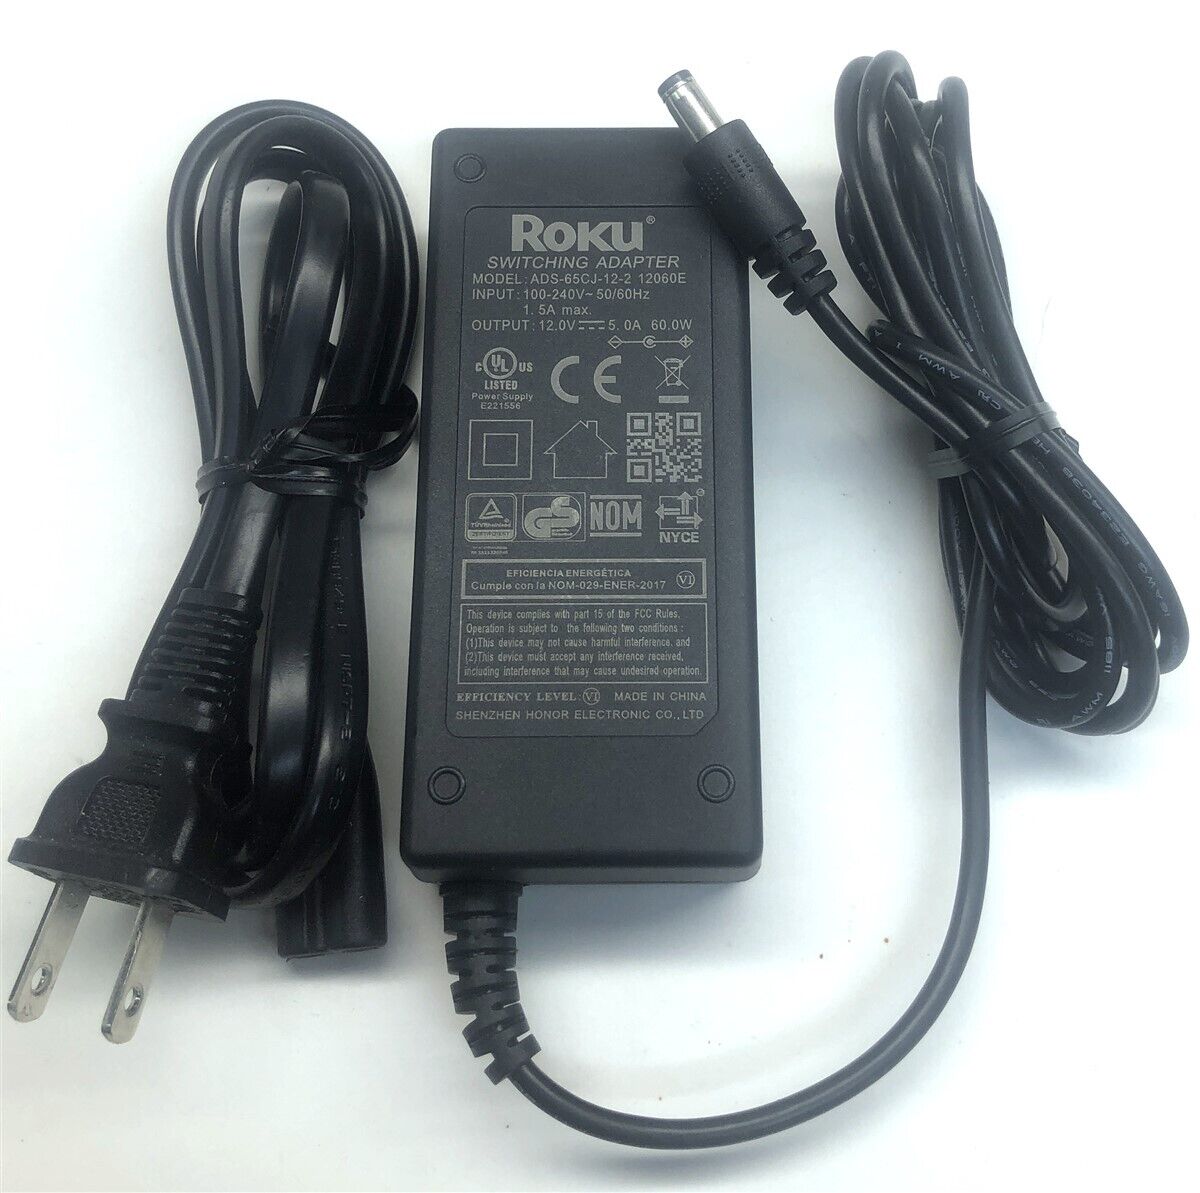 Genuine Roku charger AC Adapter Power Supply ADS-65CJ-12-2 12060E 12V 5A 60W Brand Roku Type AC/DC Adapter Output Volta